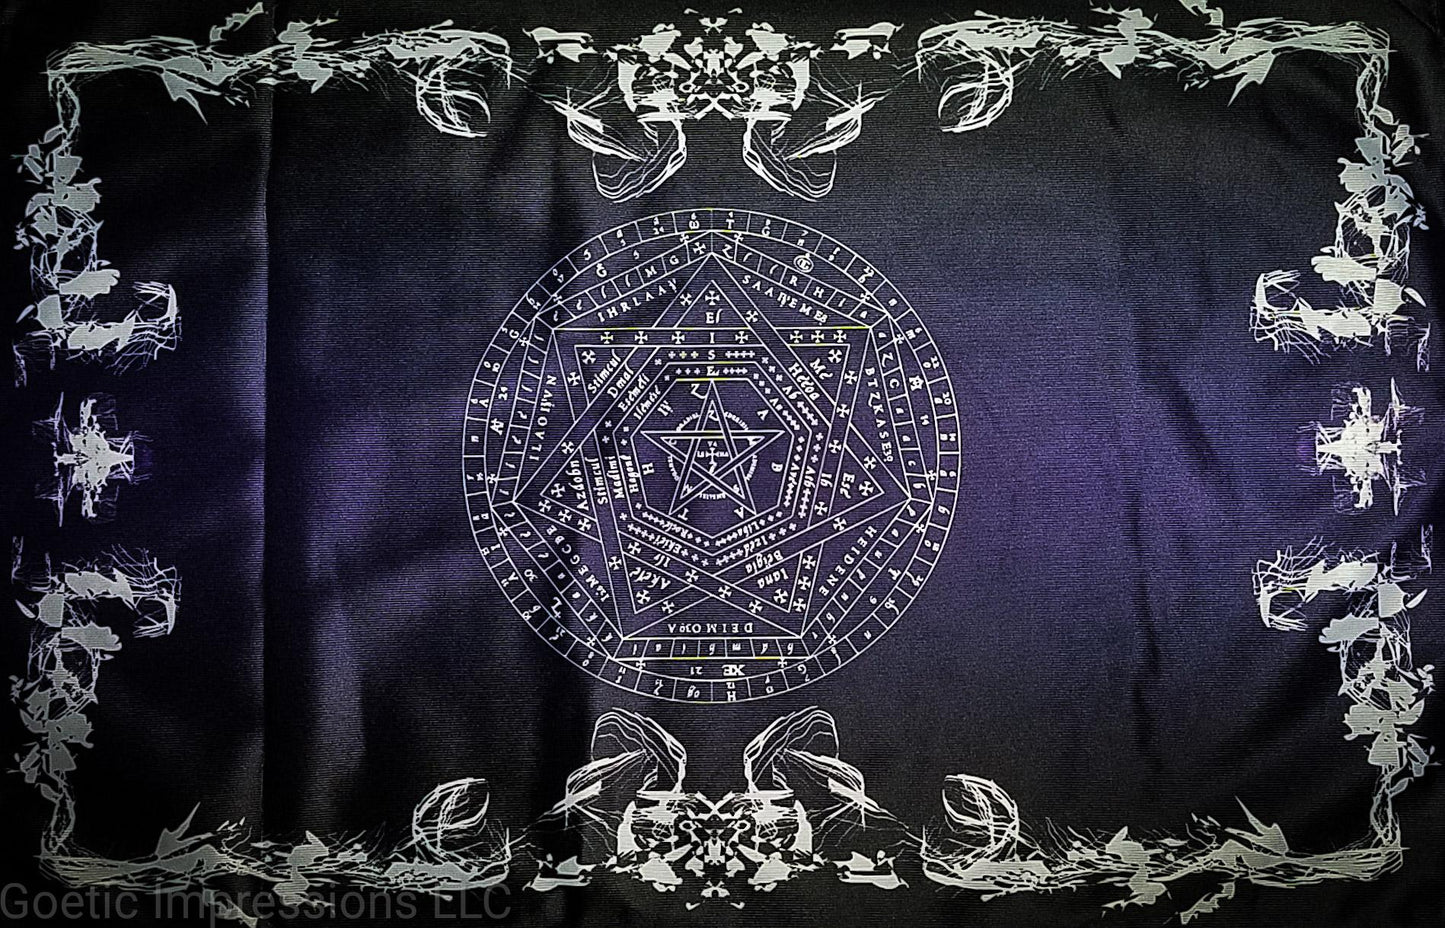 Sigillum Dei Aemeth altar cloth.